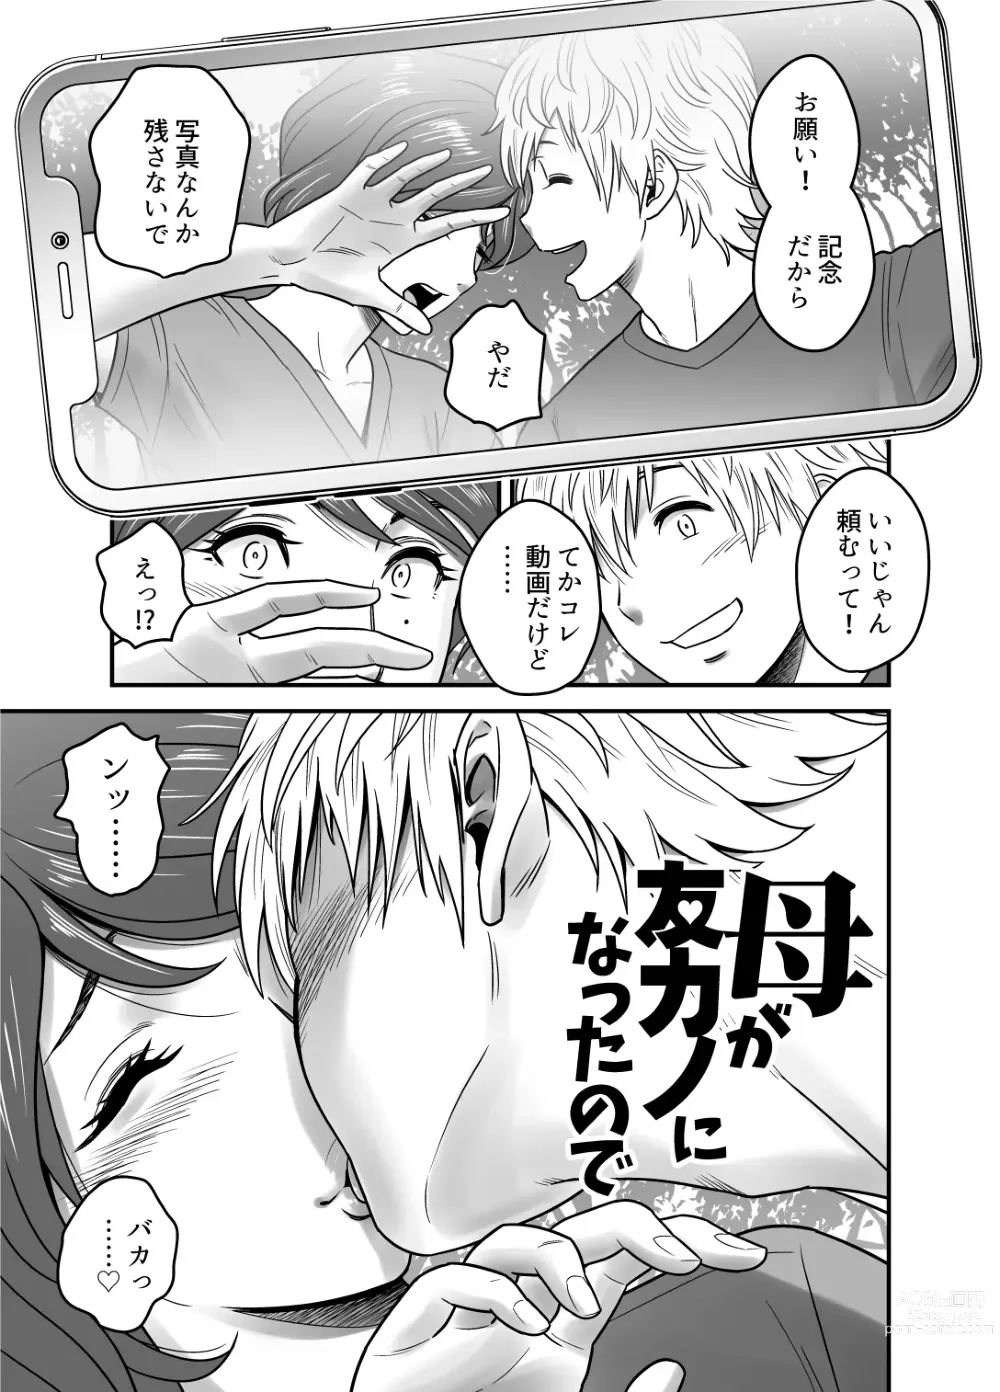 Page 5 of doujinshi Haha ga TomoKano ni Natta node